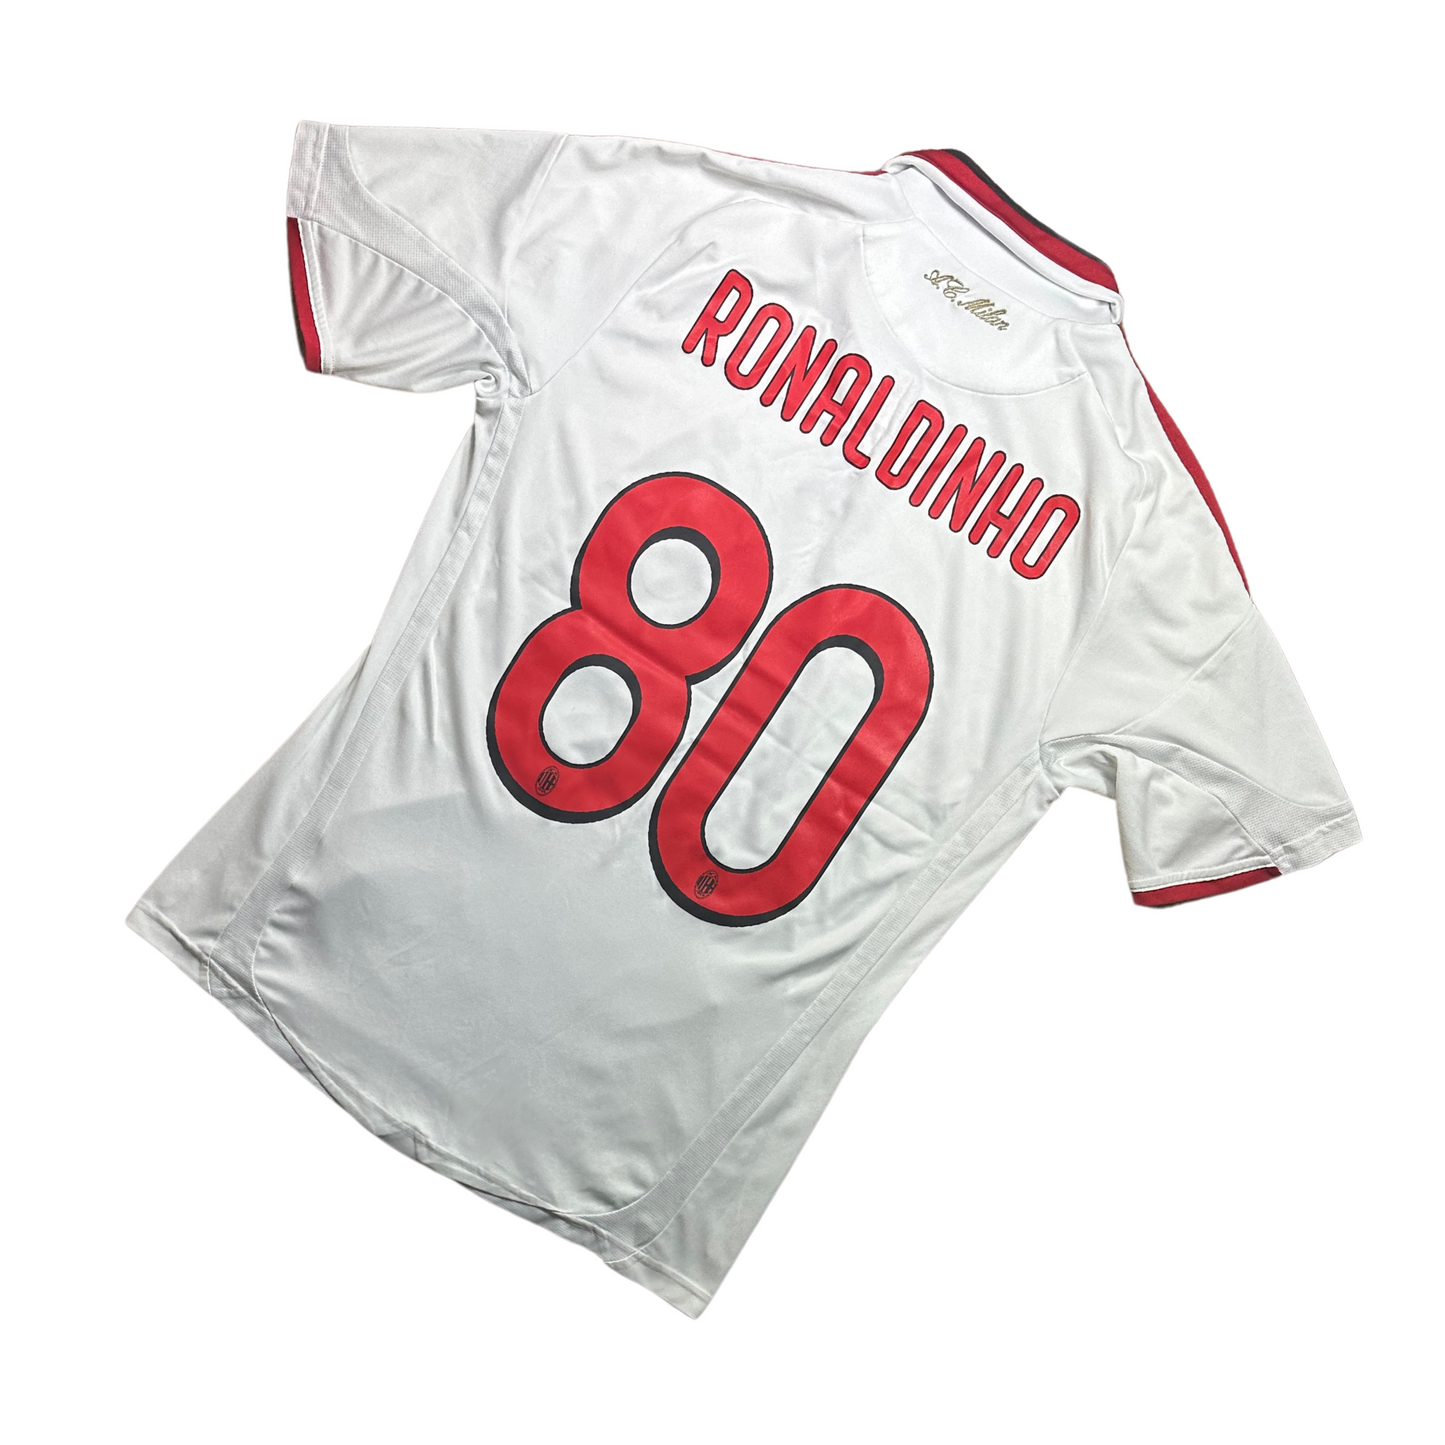 AC Milan 2009/2010 Away Football Shirt Ronaldinho (80)